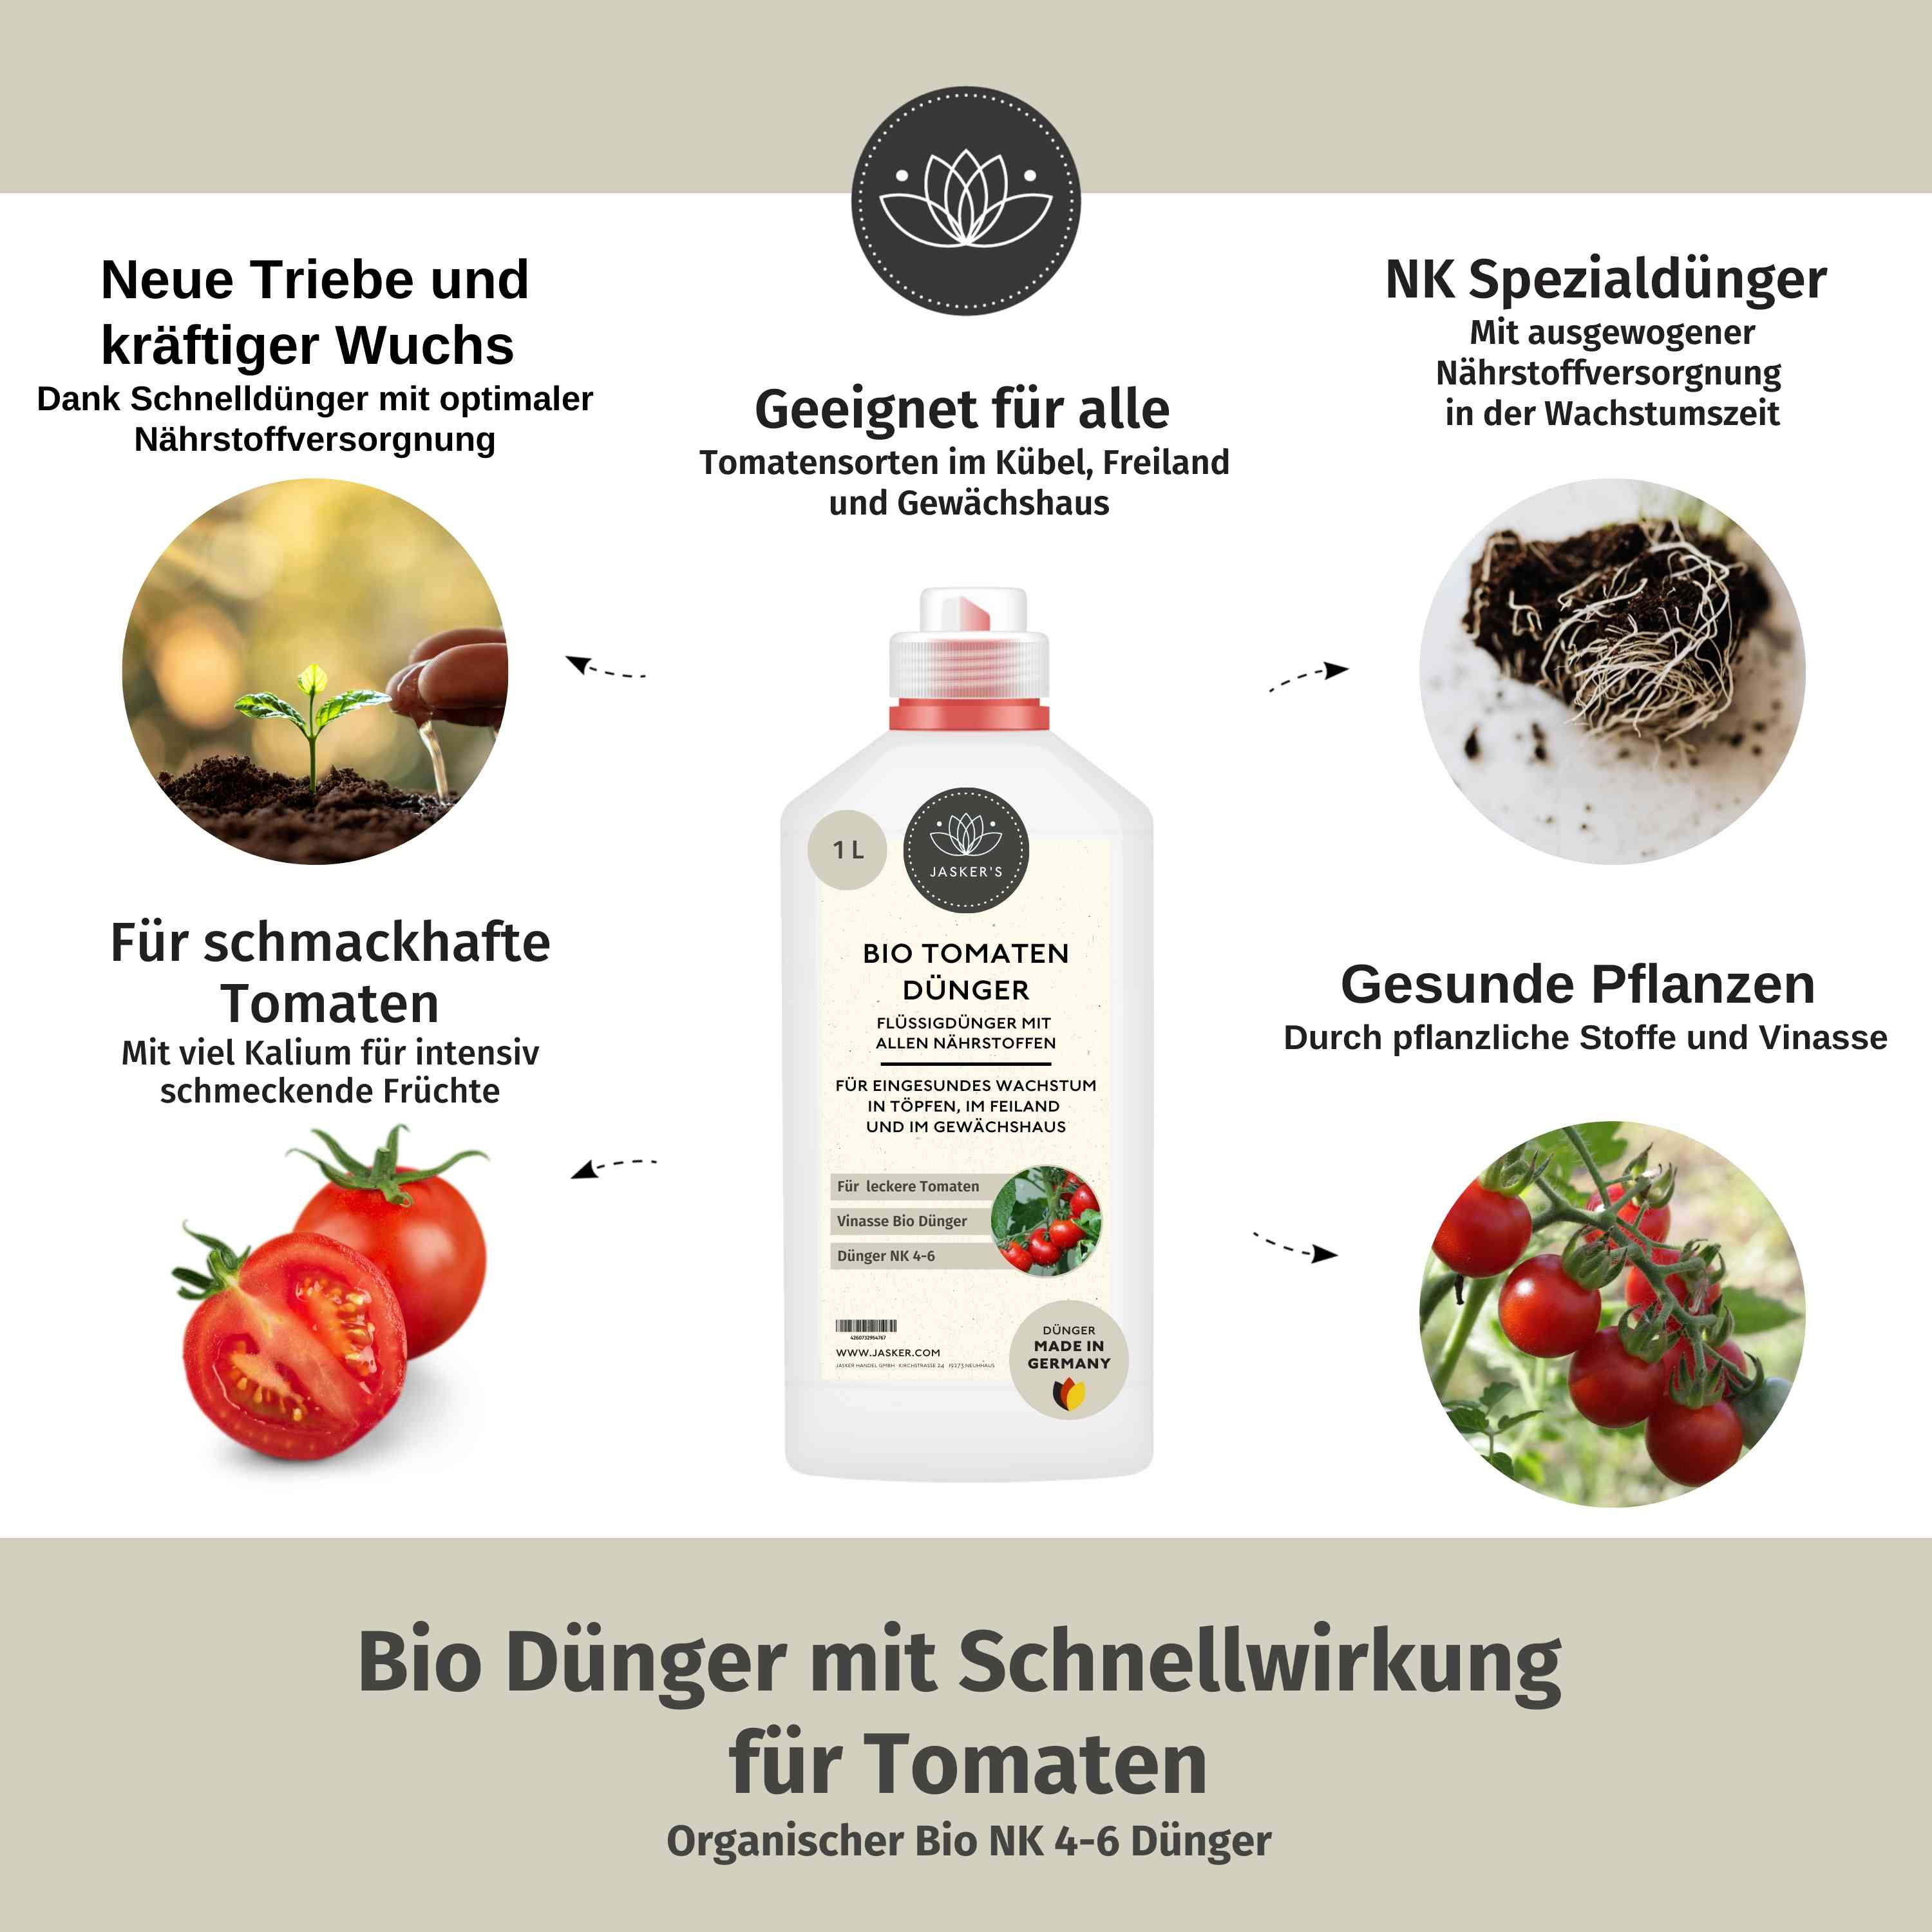 Tomatendünger Bio flüssig 1 Liter - Flüssigdünger für Tomaten